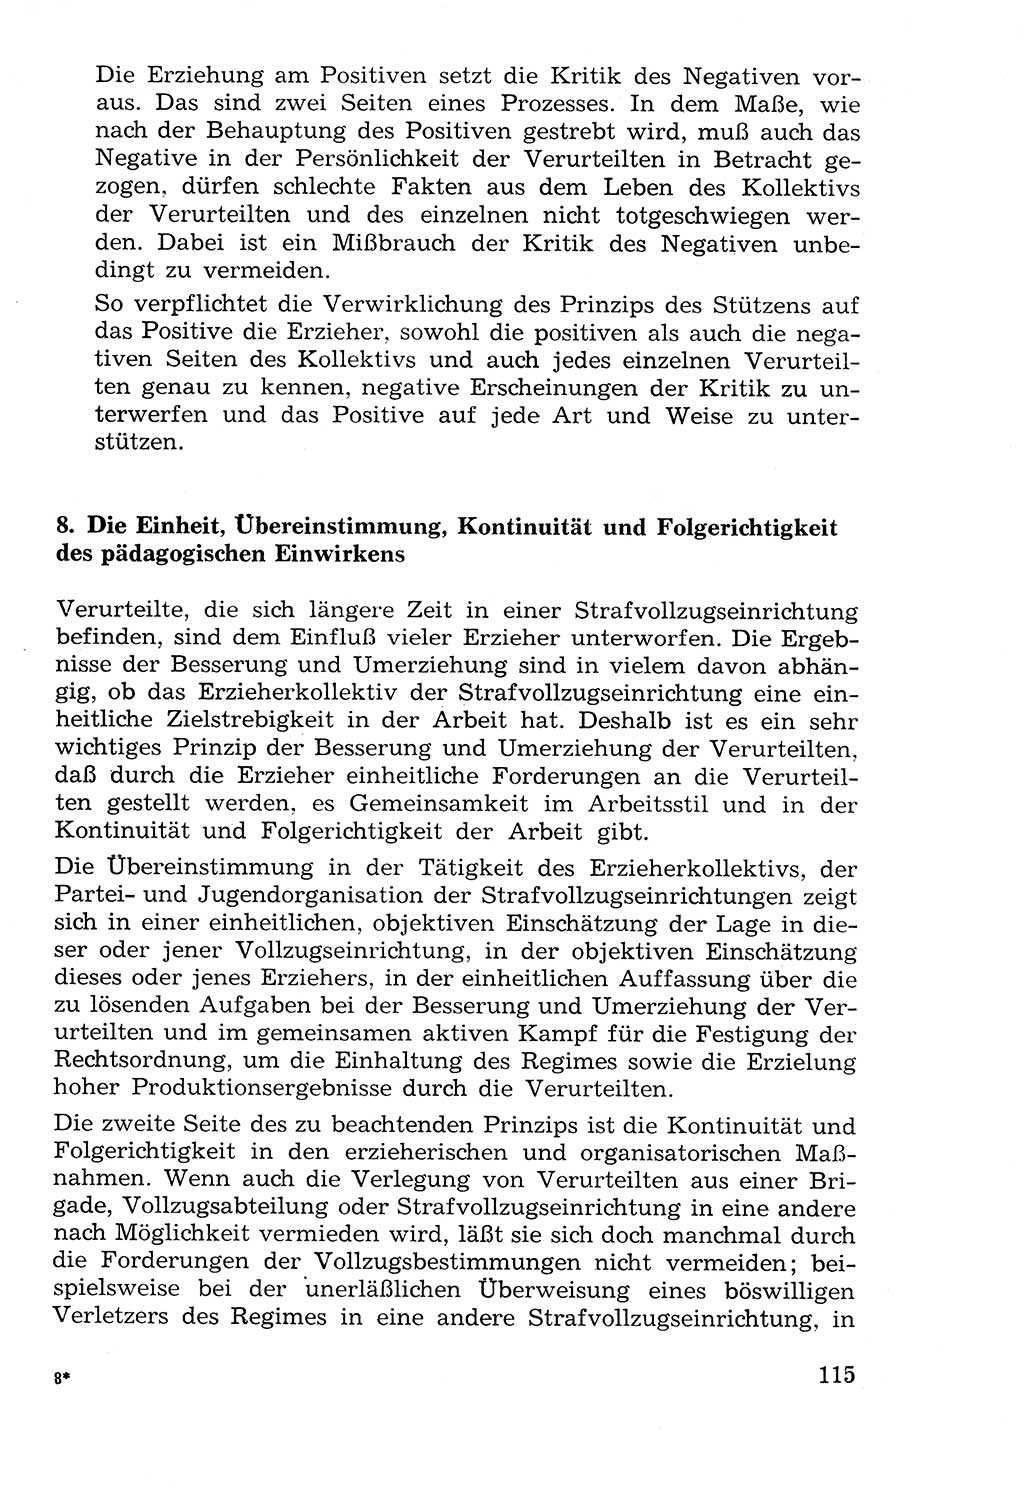 Lehrbuch der Strafvollzugspädagogik [Deutsche Demokratische Republik (DDR)] 1969, Seite 115 (Lb. SV-Pd. DDR 1969, S. 115)